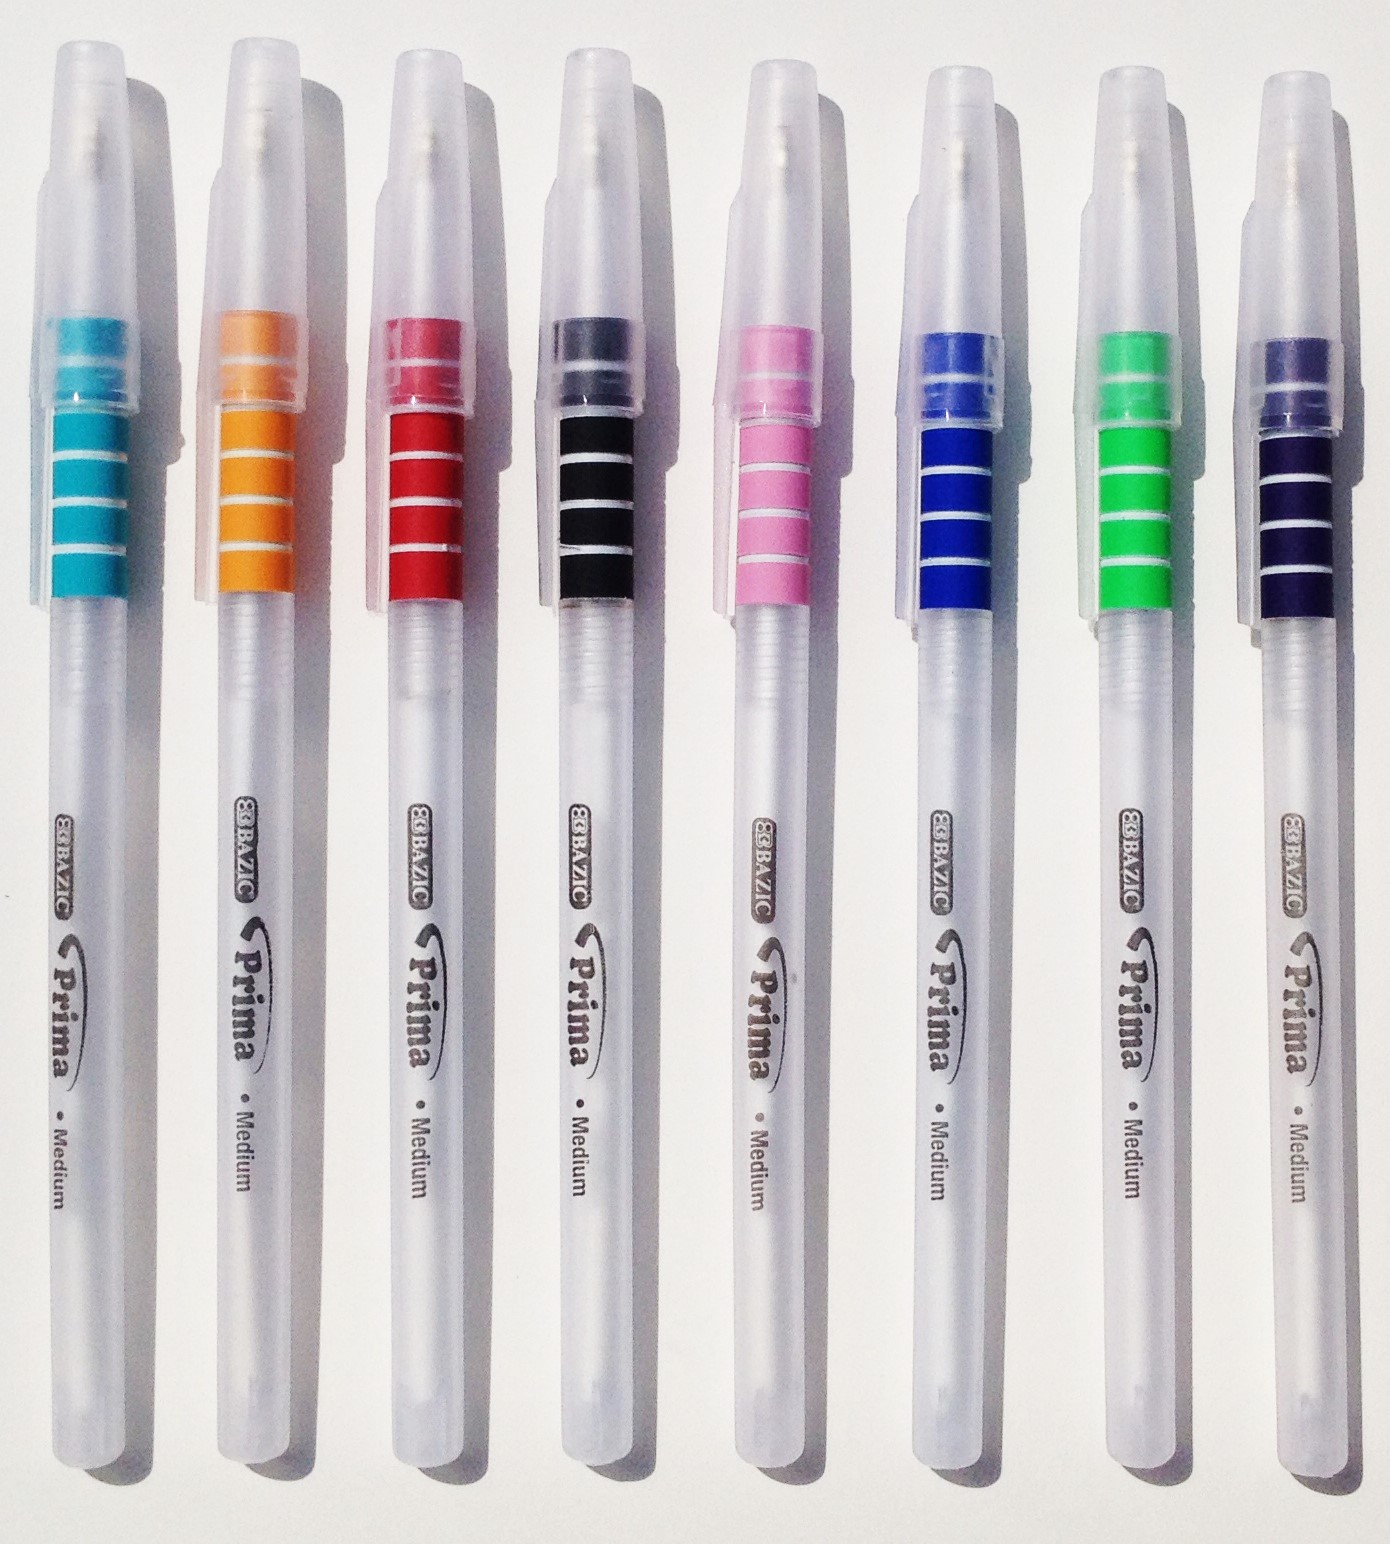 8 Color Stick Pens | The Pencil Superstore